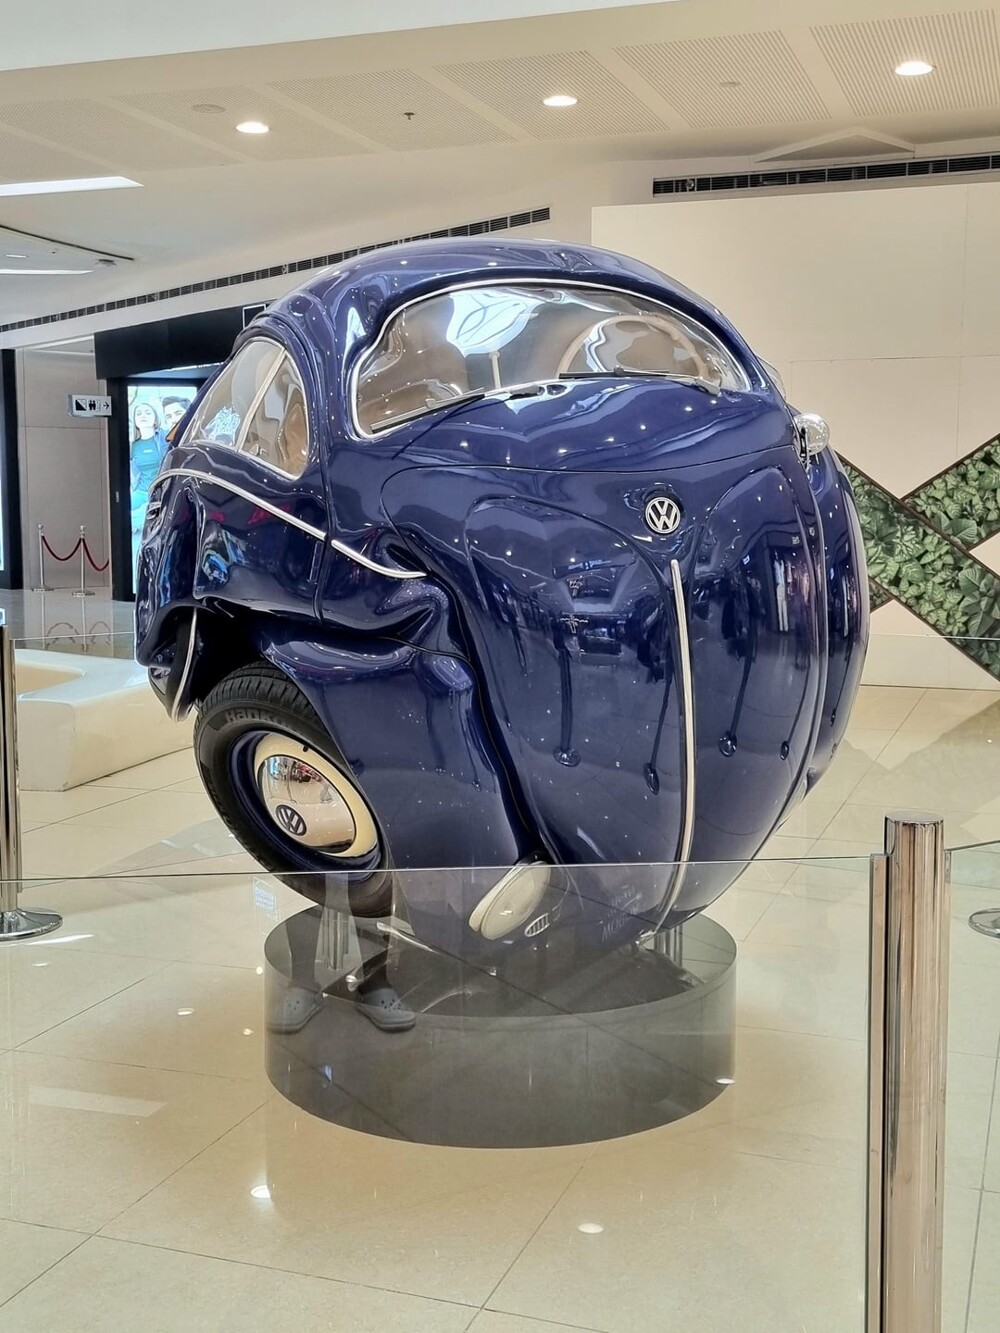 5. Скульптура "Сфера жука", сделанная из настоящего Volkswagen Beetle 1953 года выпуска. Автор - известный индонезийский художник Ичван Ноор